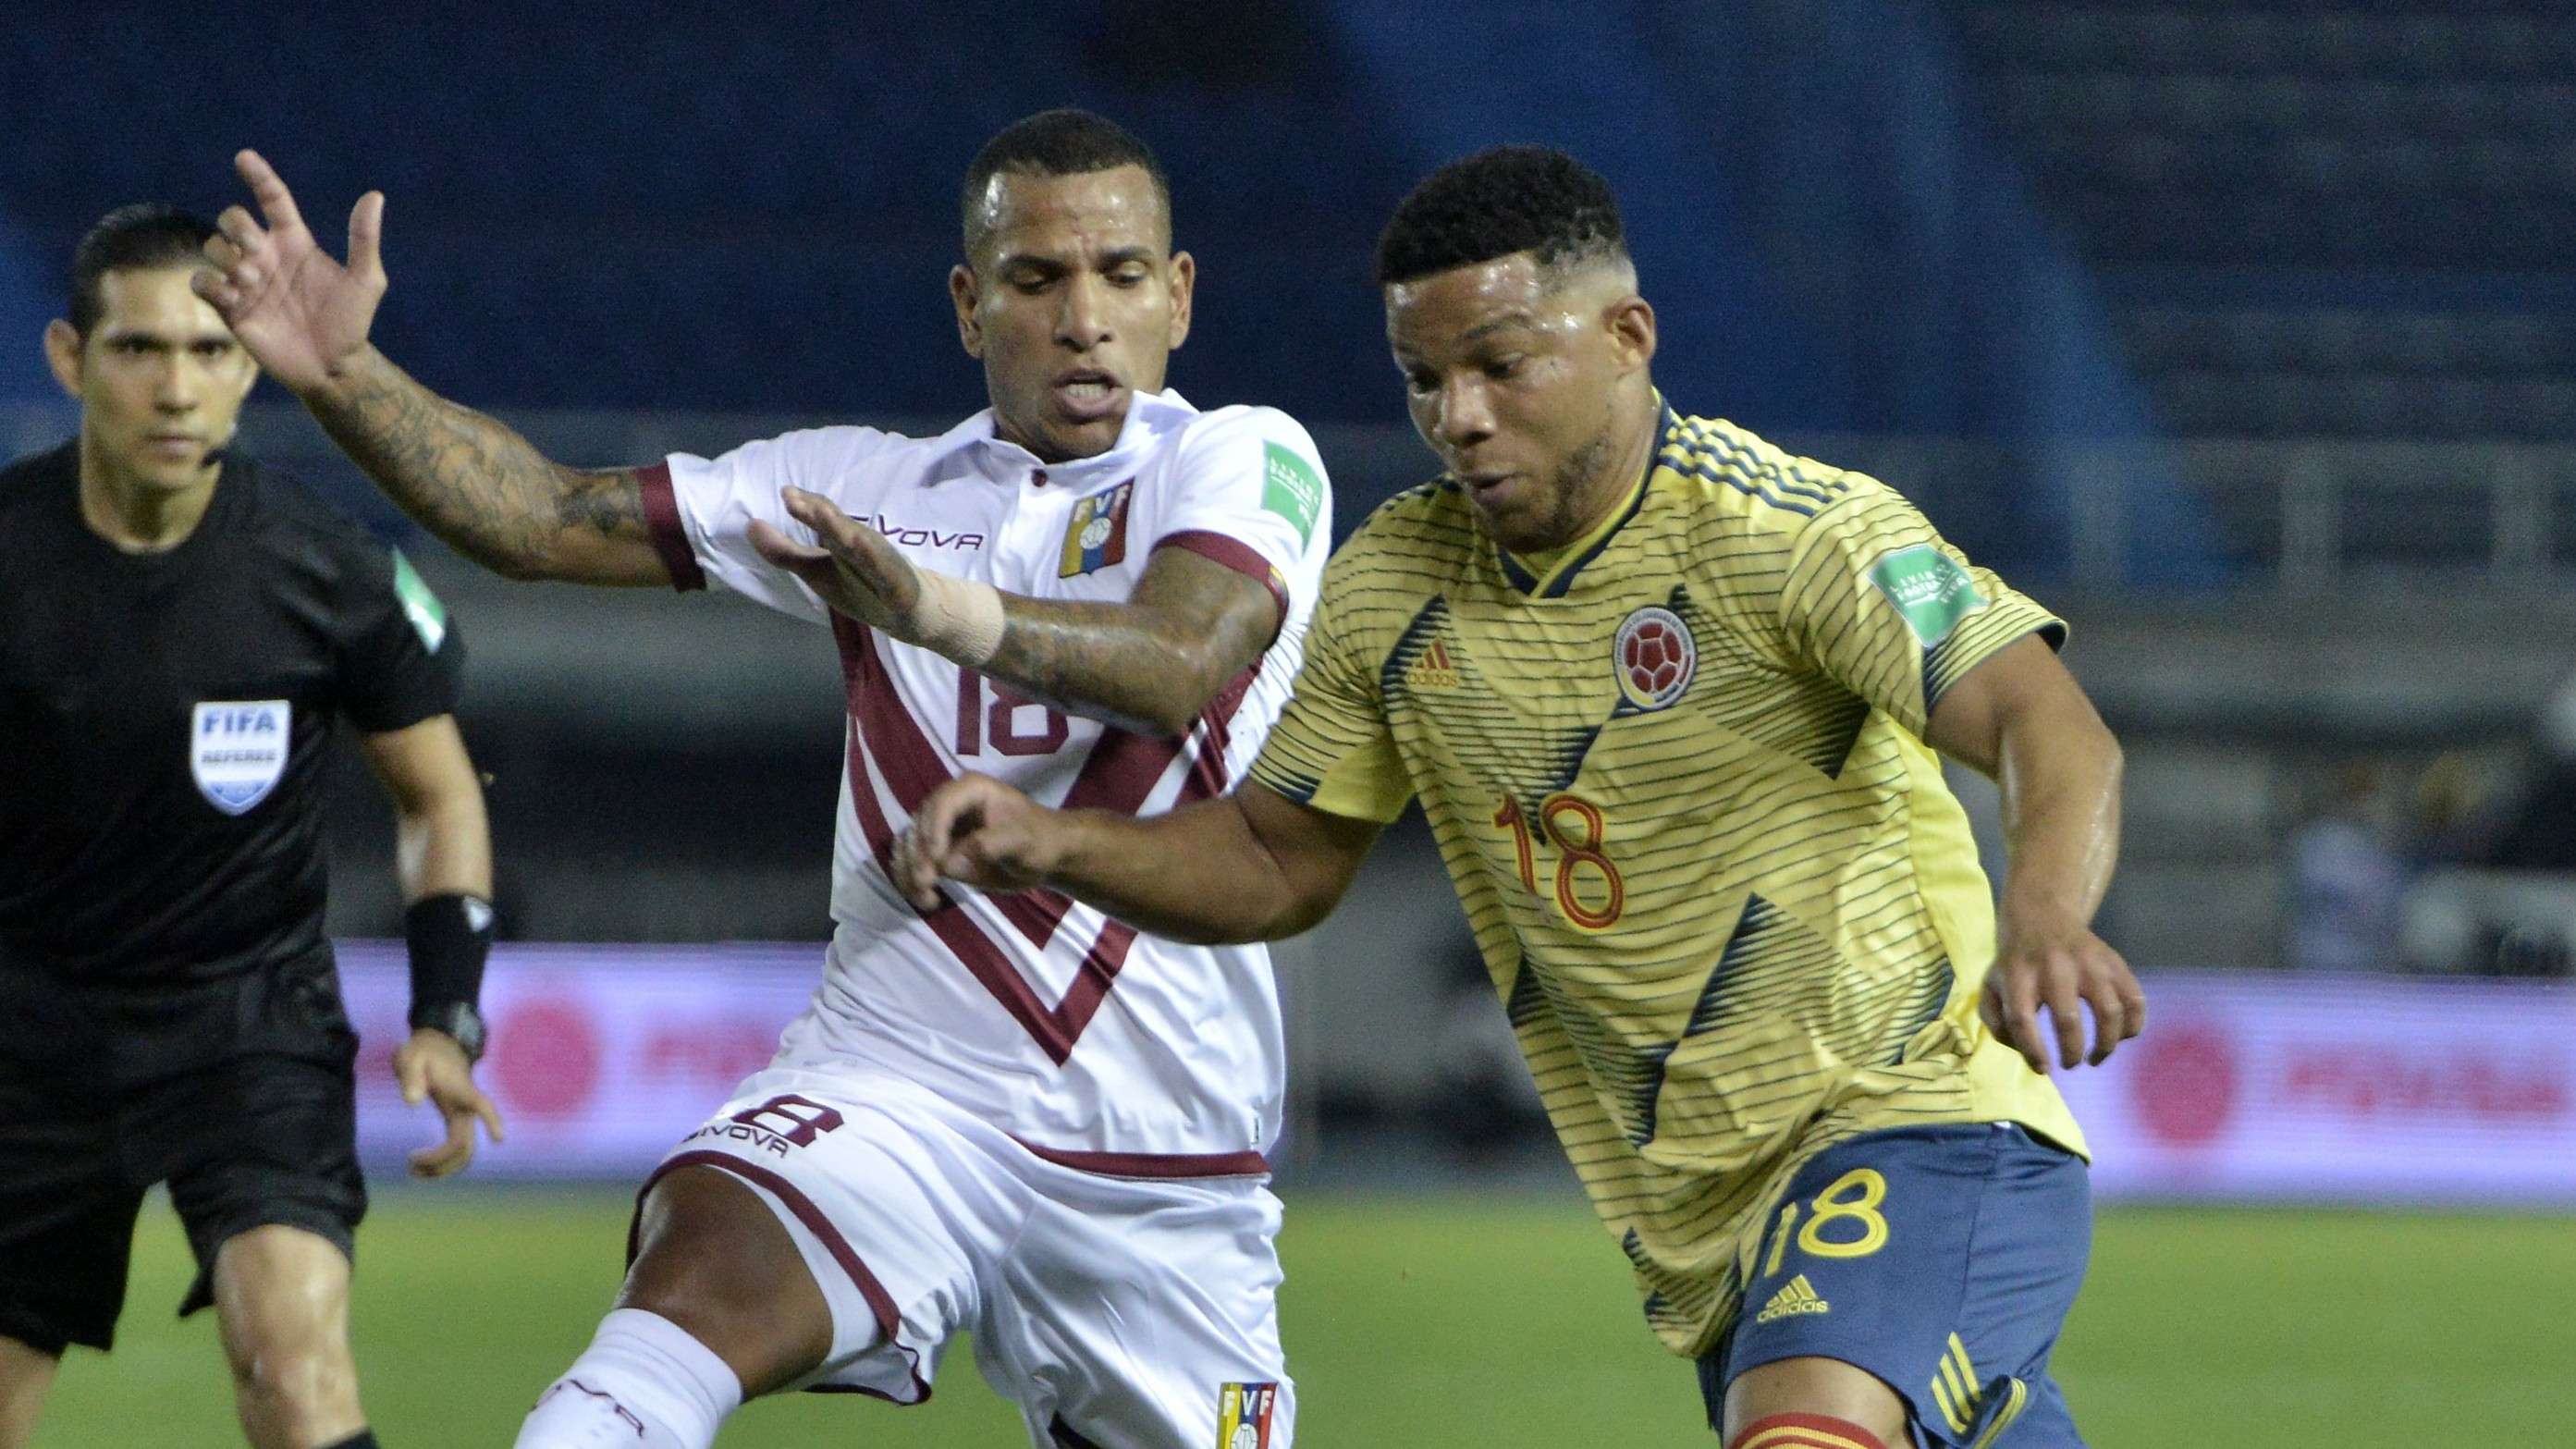 Fabra Colombia Venezuela Fecha 1 Eliminatorias Sudamericanas Octubre 2020